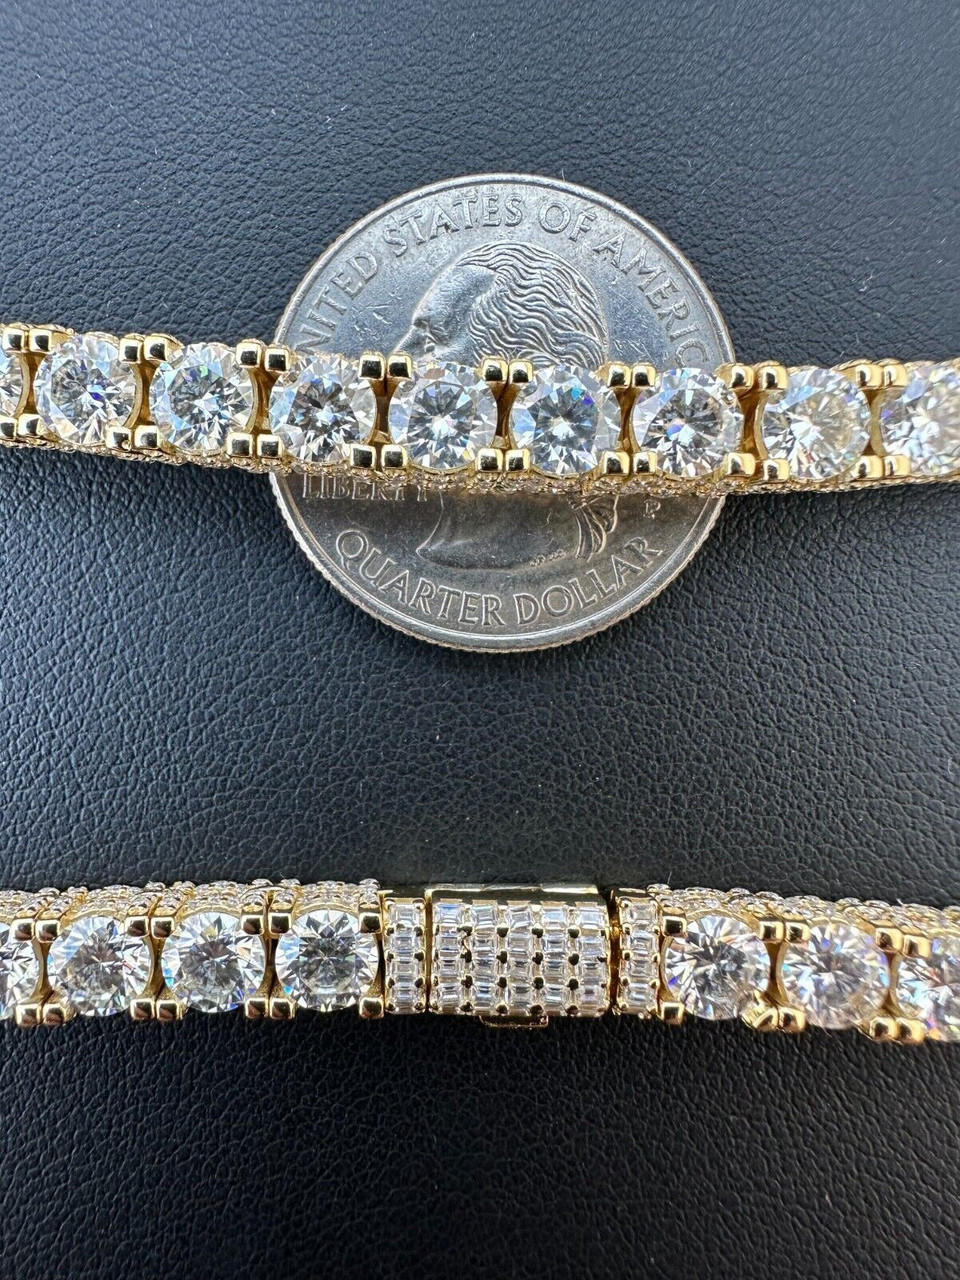 5mm 14k White Gold Moissanite Diamond Tennis Bracelet 925 Sterling Silver Iced out Bracelet